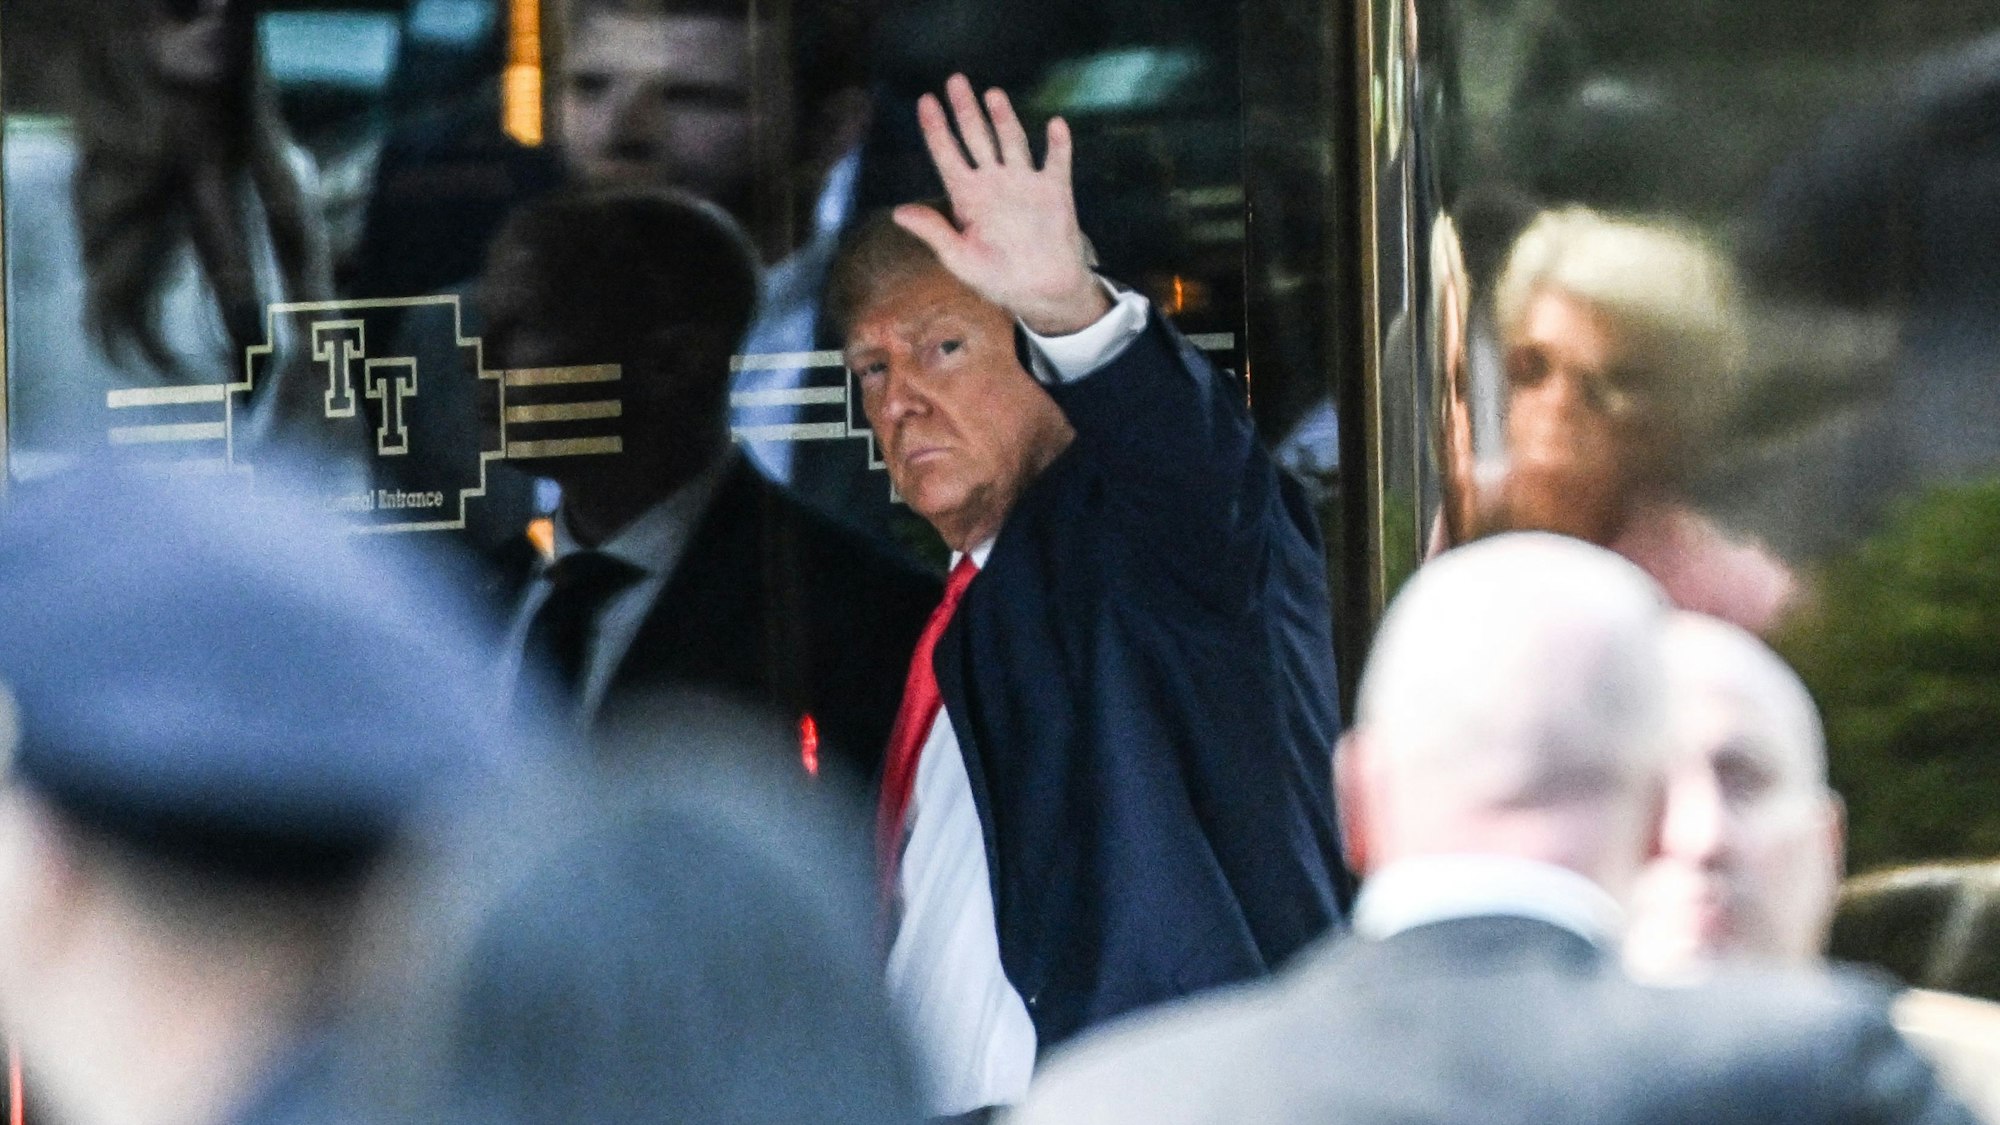 Donald Trump bei seiner Ankunft am Trump Tower in New York am Montag. Am Dienstagabend muss der Ex-US-Präsident vor Gericht in Manhattan erscheinen.